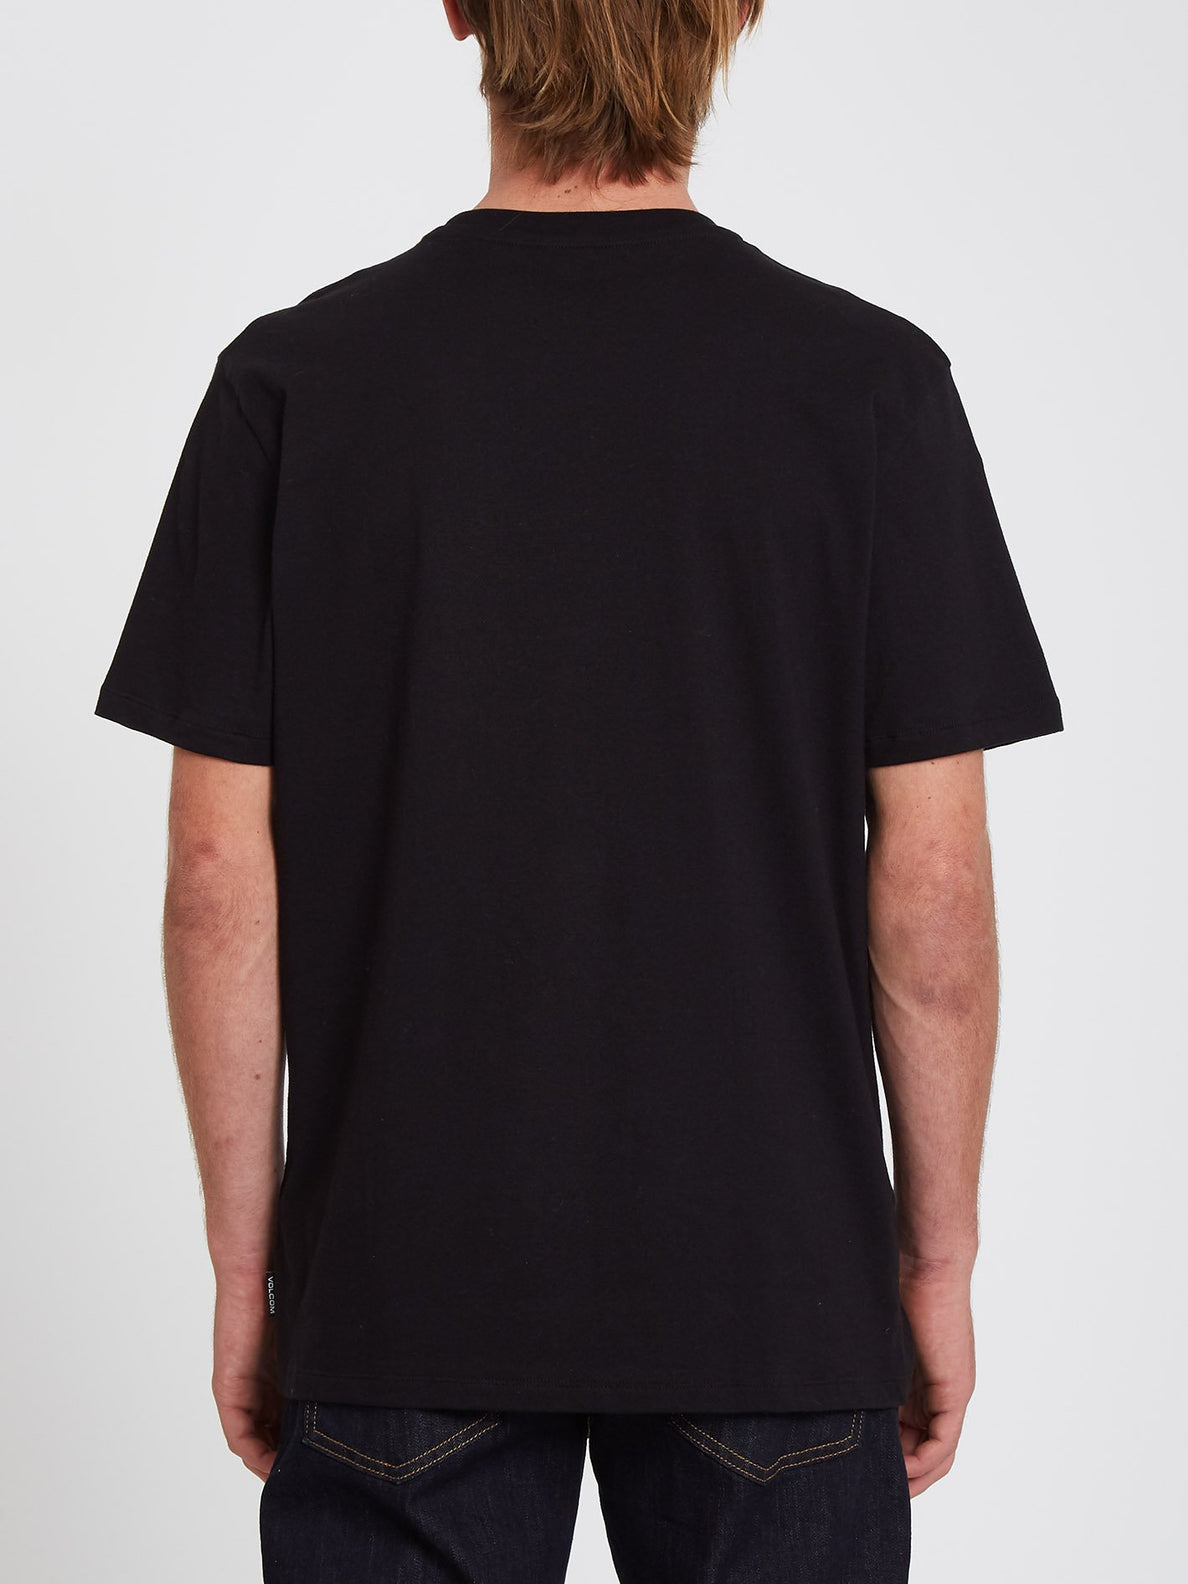 Max Loeffler T-shirt - BLACK (A5232108_BLK) [B]